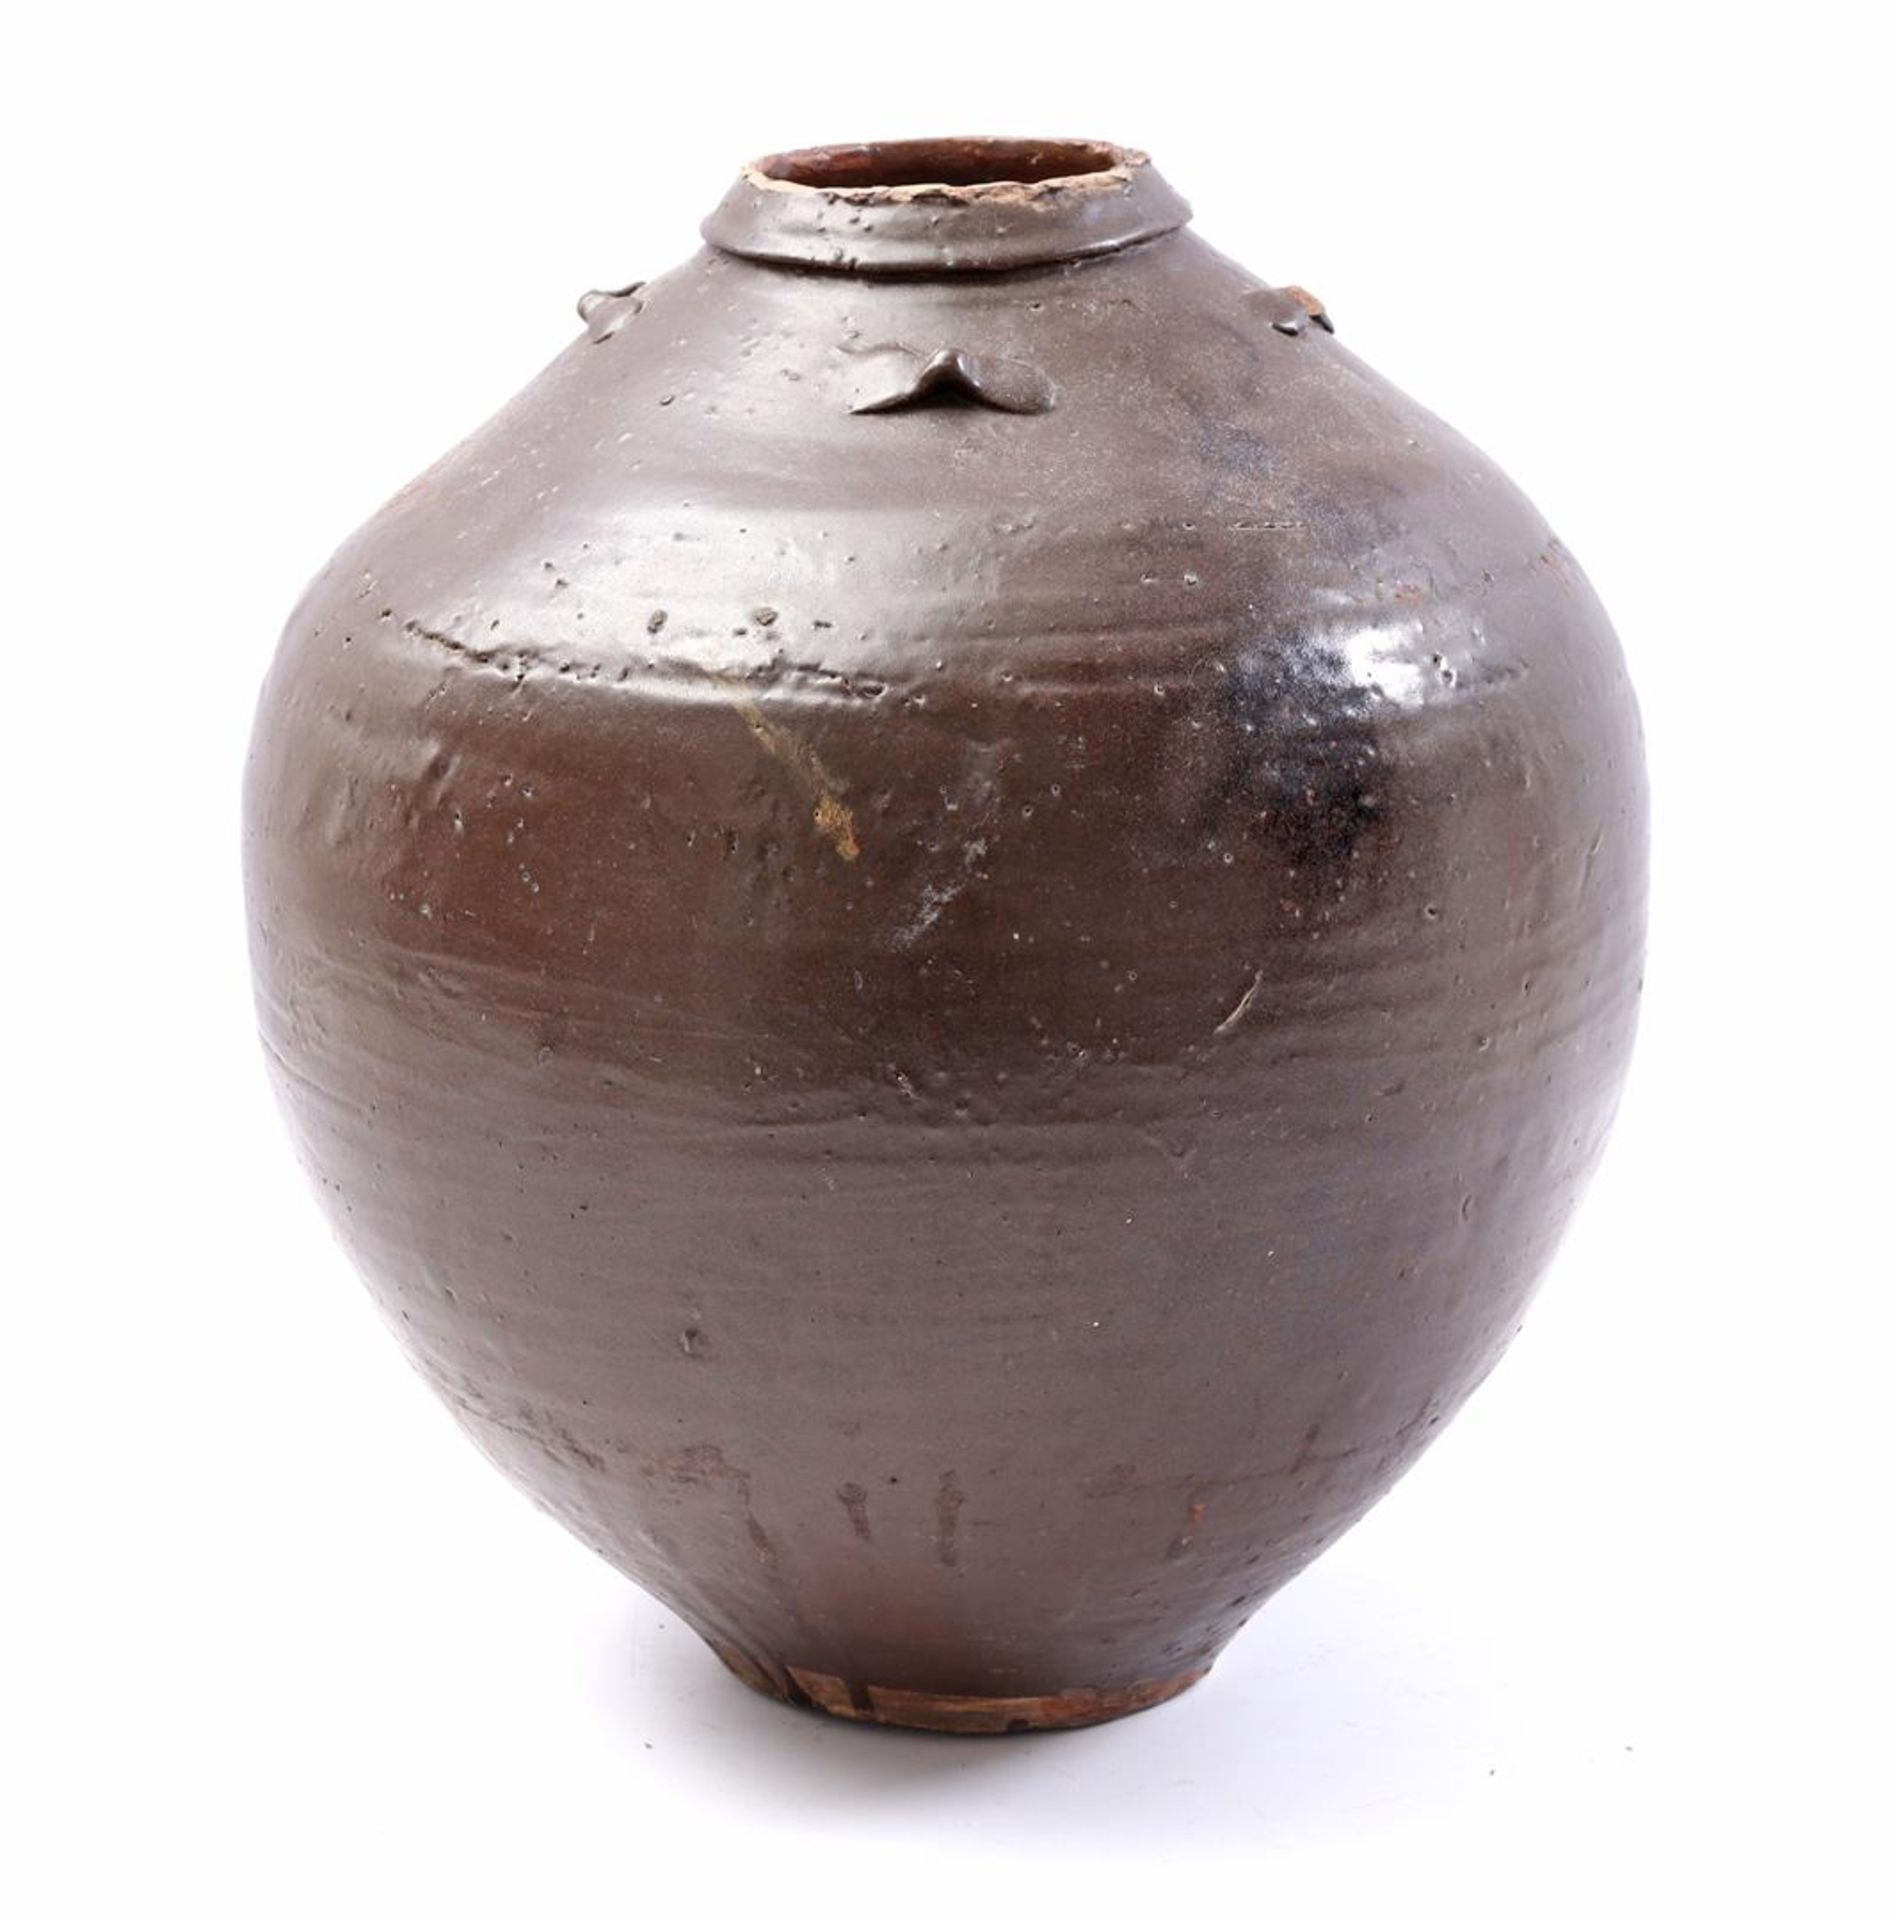 Earthenware glazed pot